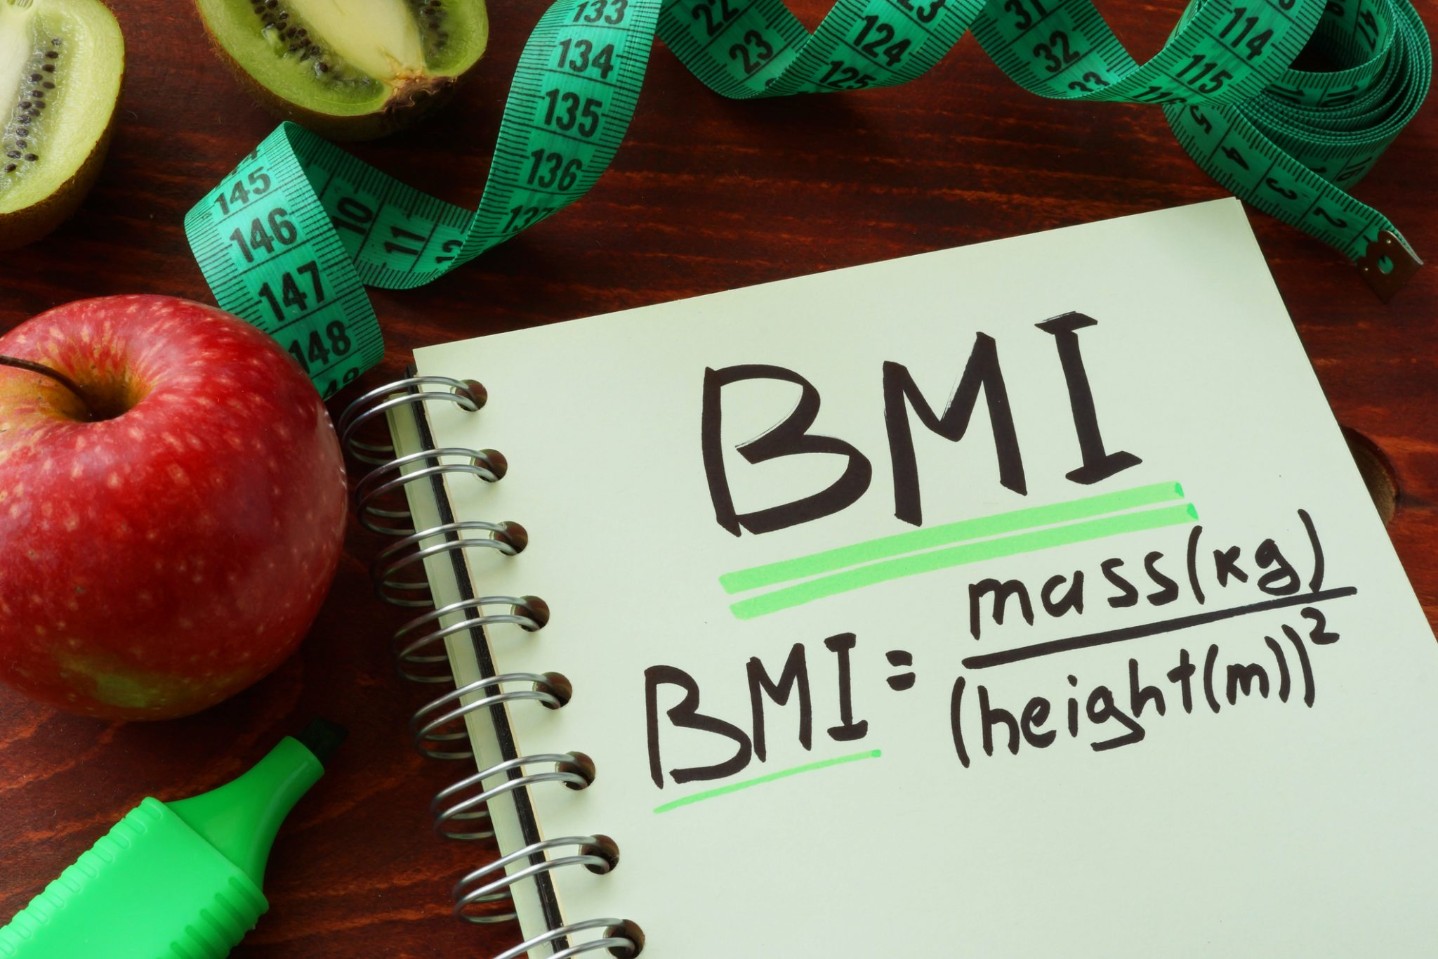 BMI body mass index written on a notepad sheet.